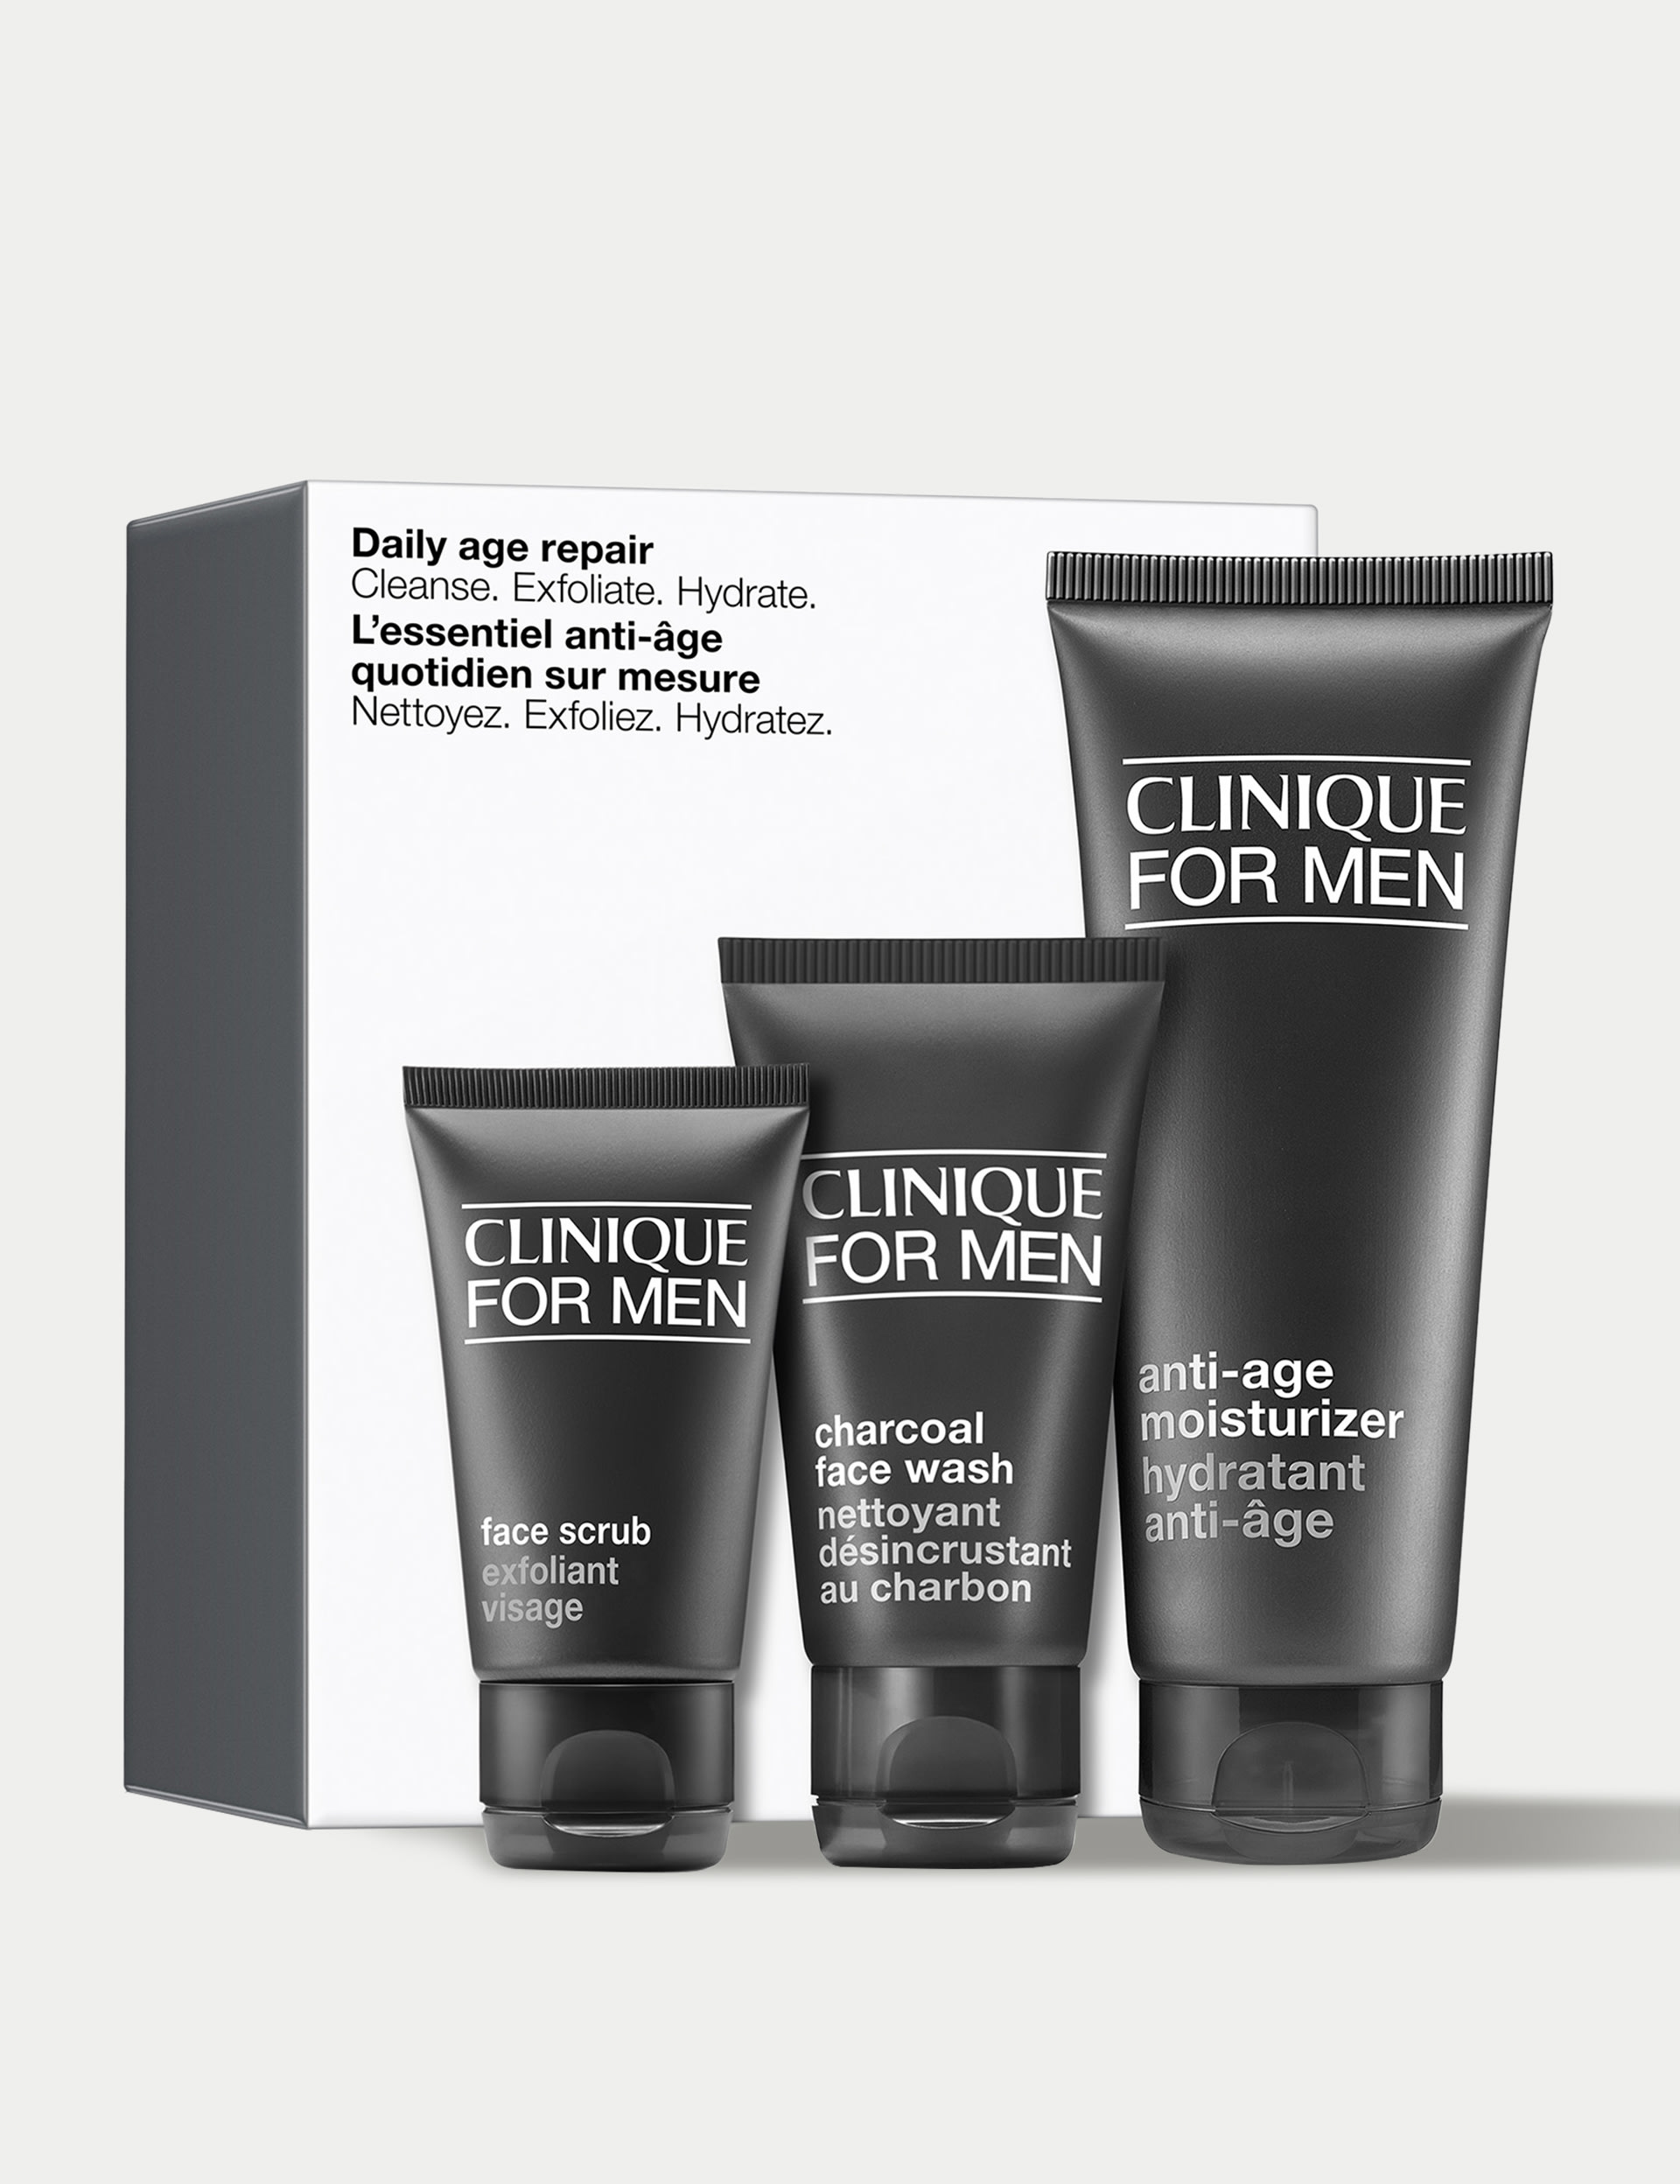 Daily Age Repair Skincare Gift Set for Men